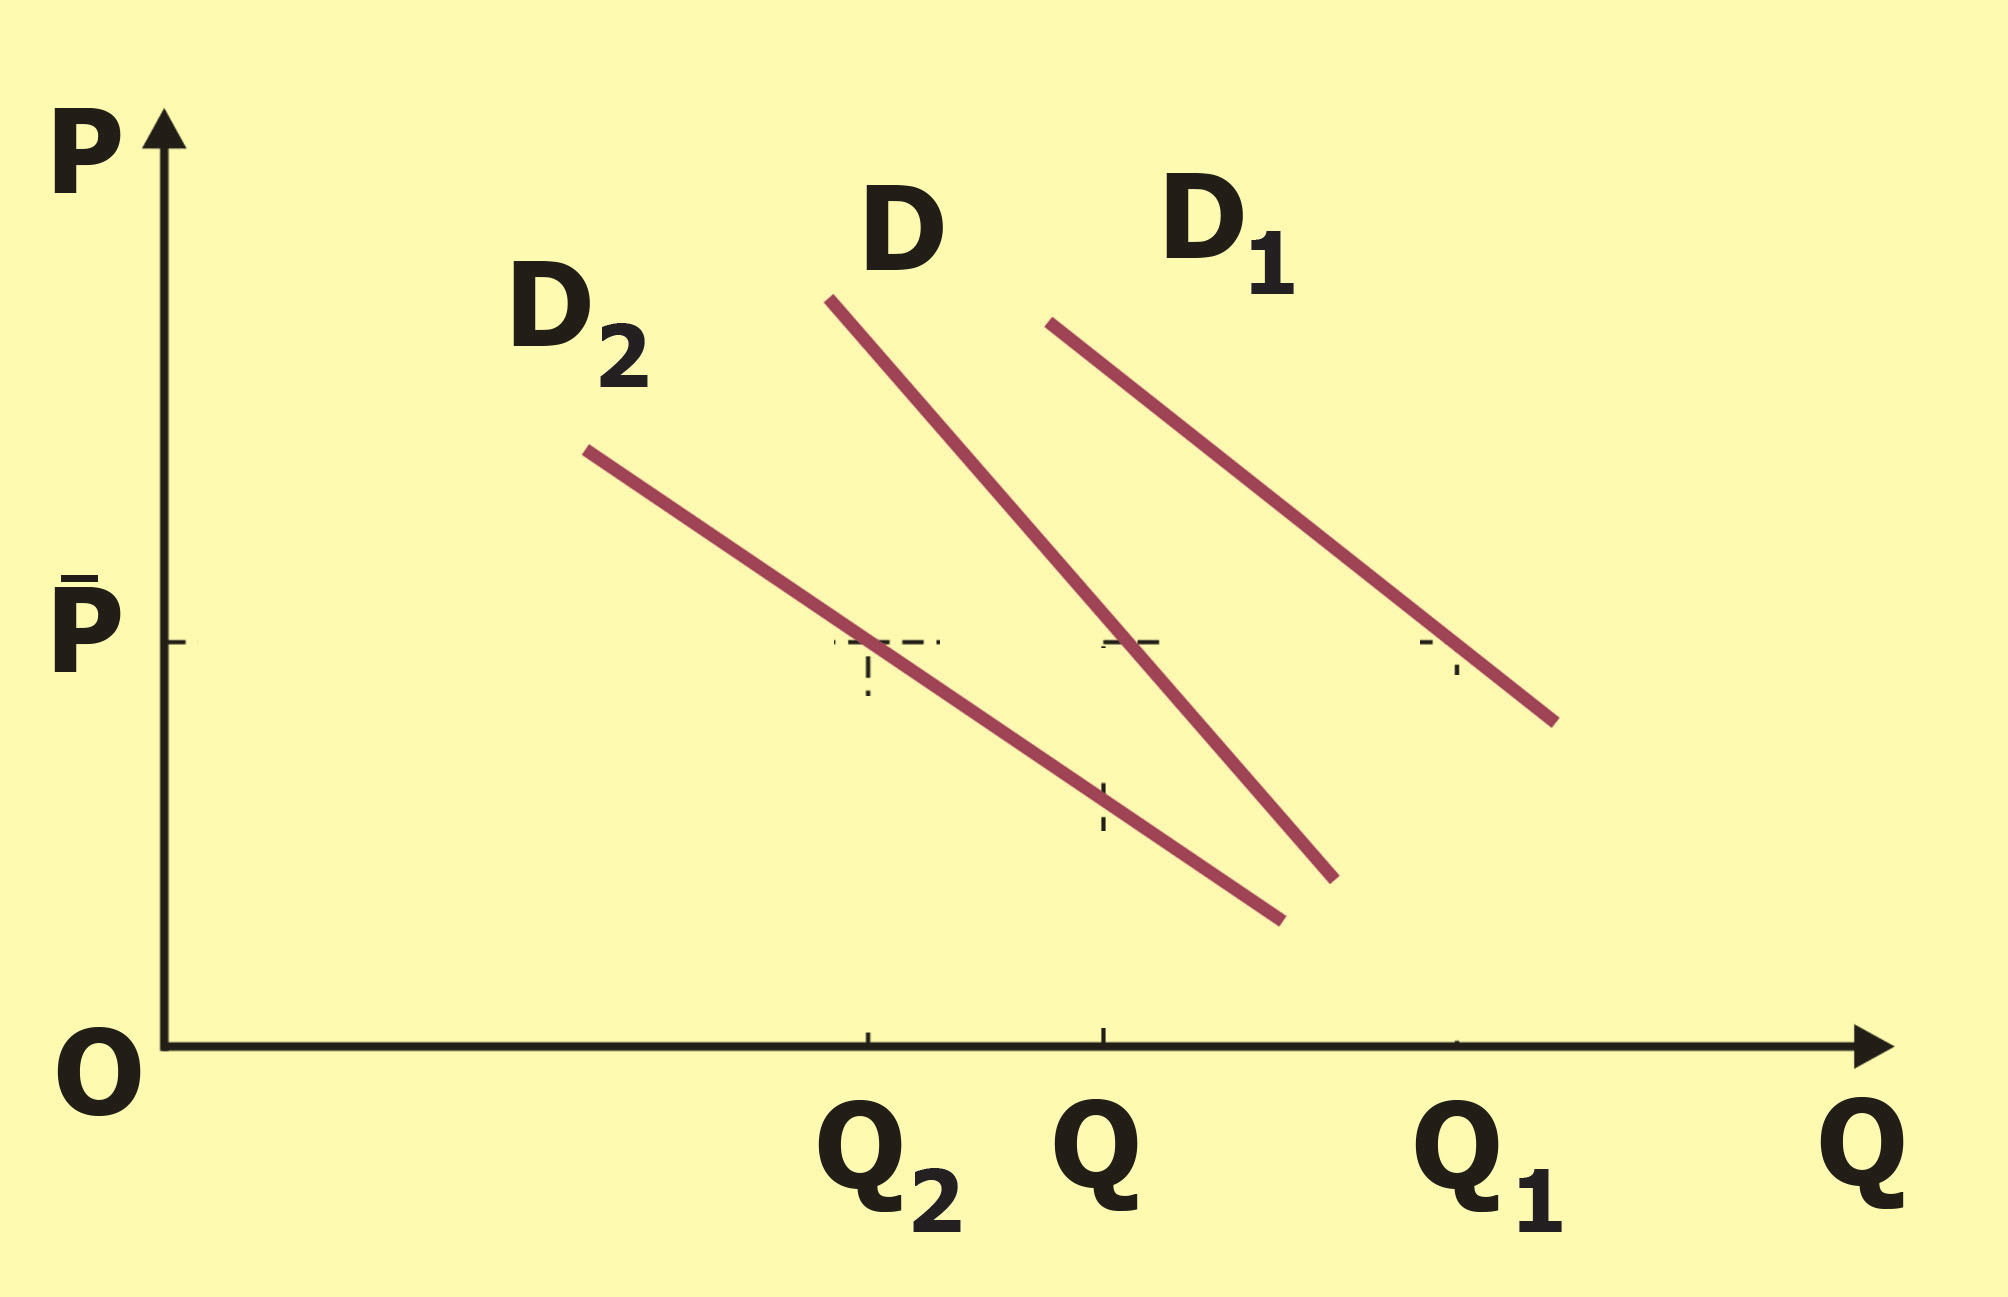 τησης μετατοπίζει την καμπύλη στη θέση D 1, ενώ μείωση της ζήτησης τη μετατοπίζει στη θέση D 2. [Διάγραμμα 2.5.